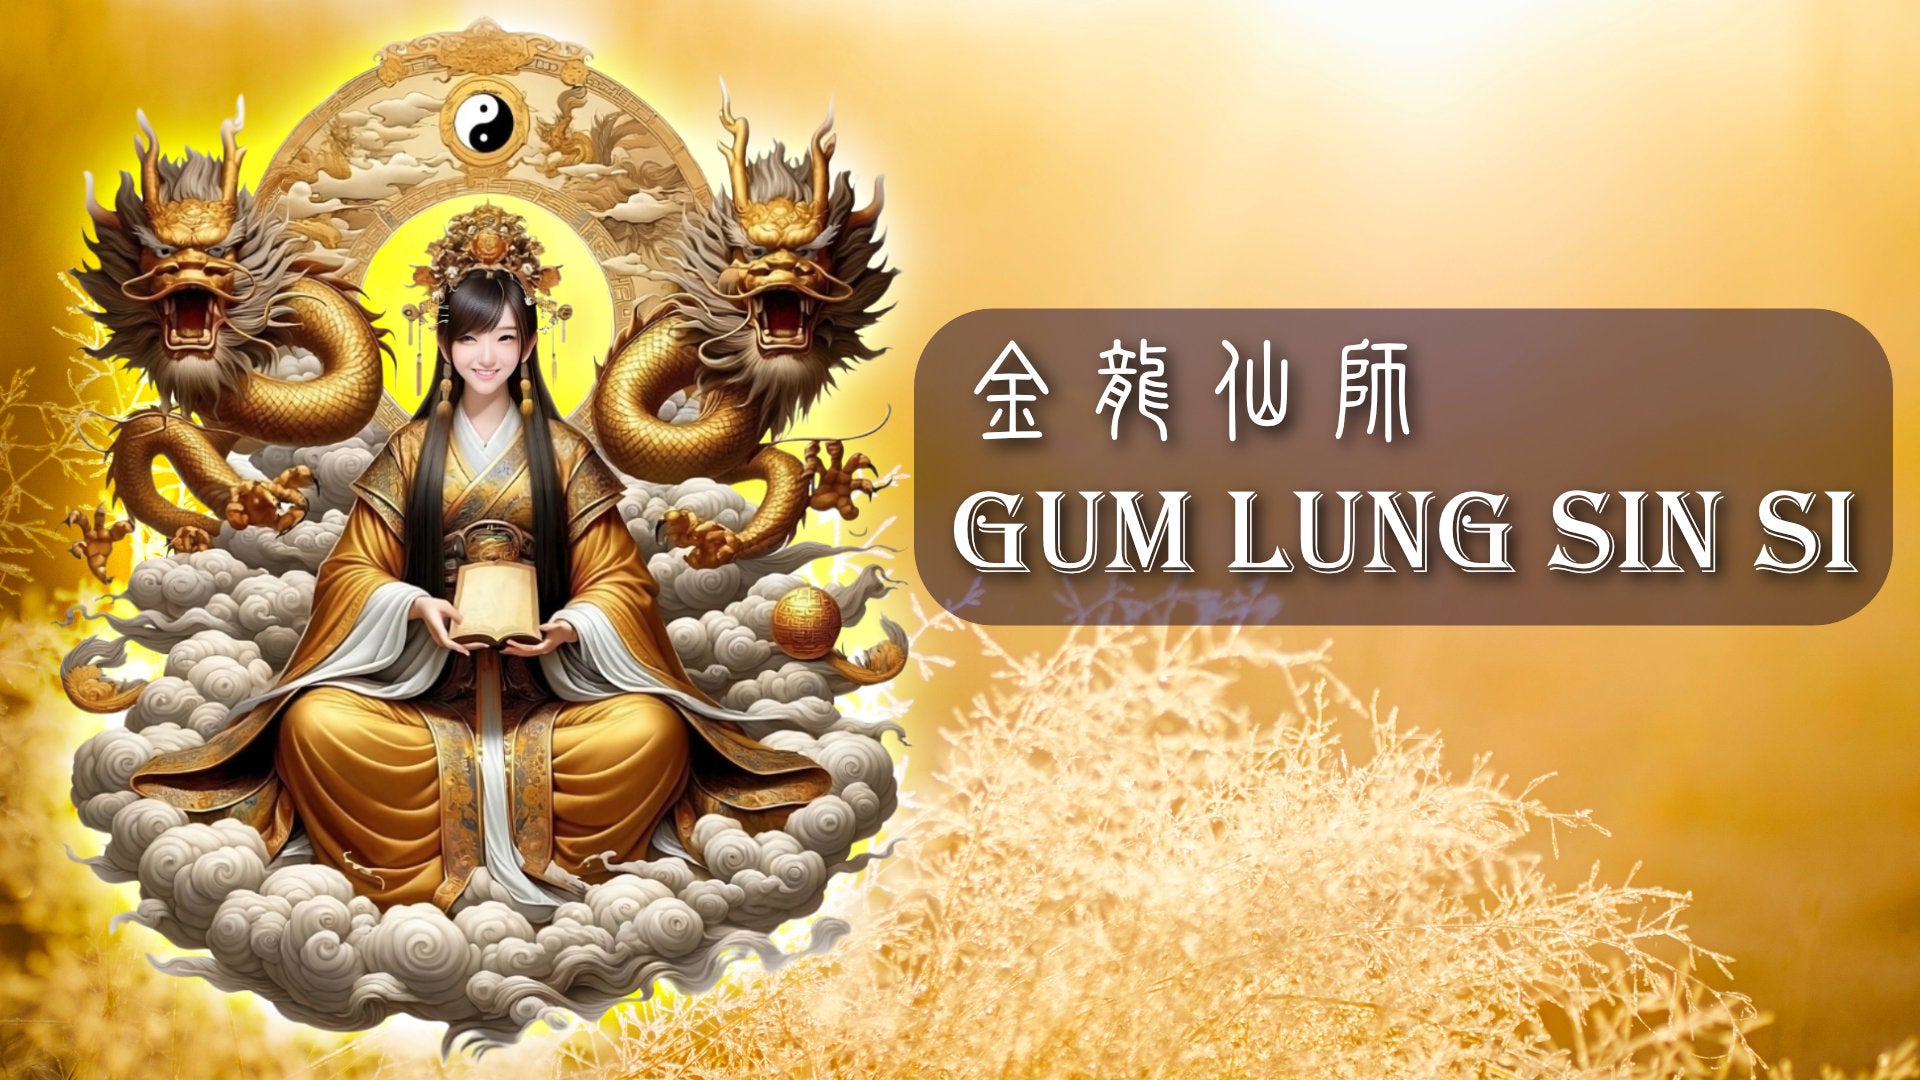 
          Gum Lung Sin Si 金龍仙師
        